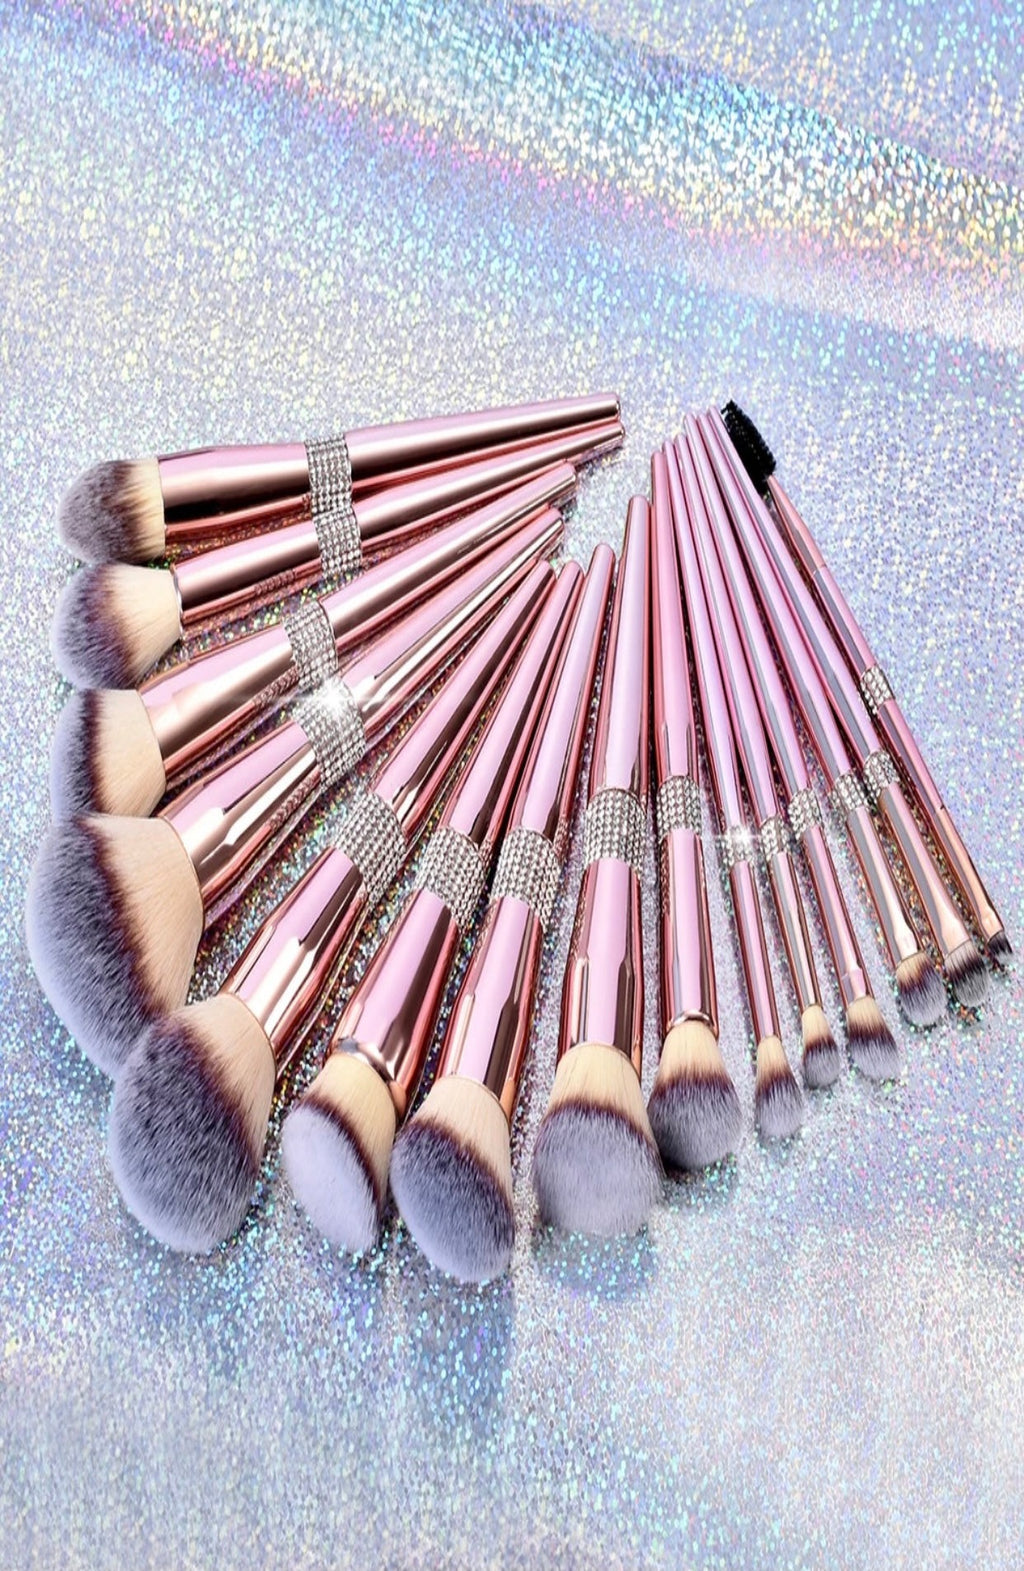 Luxe Brushes(full set)